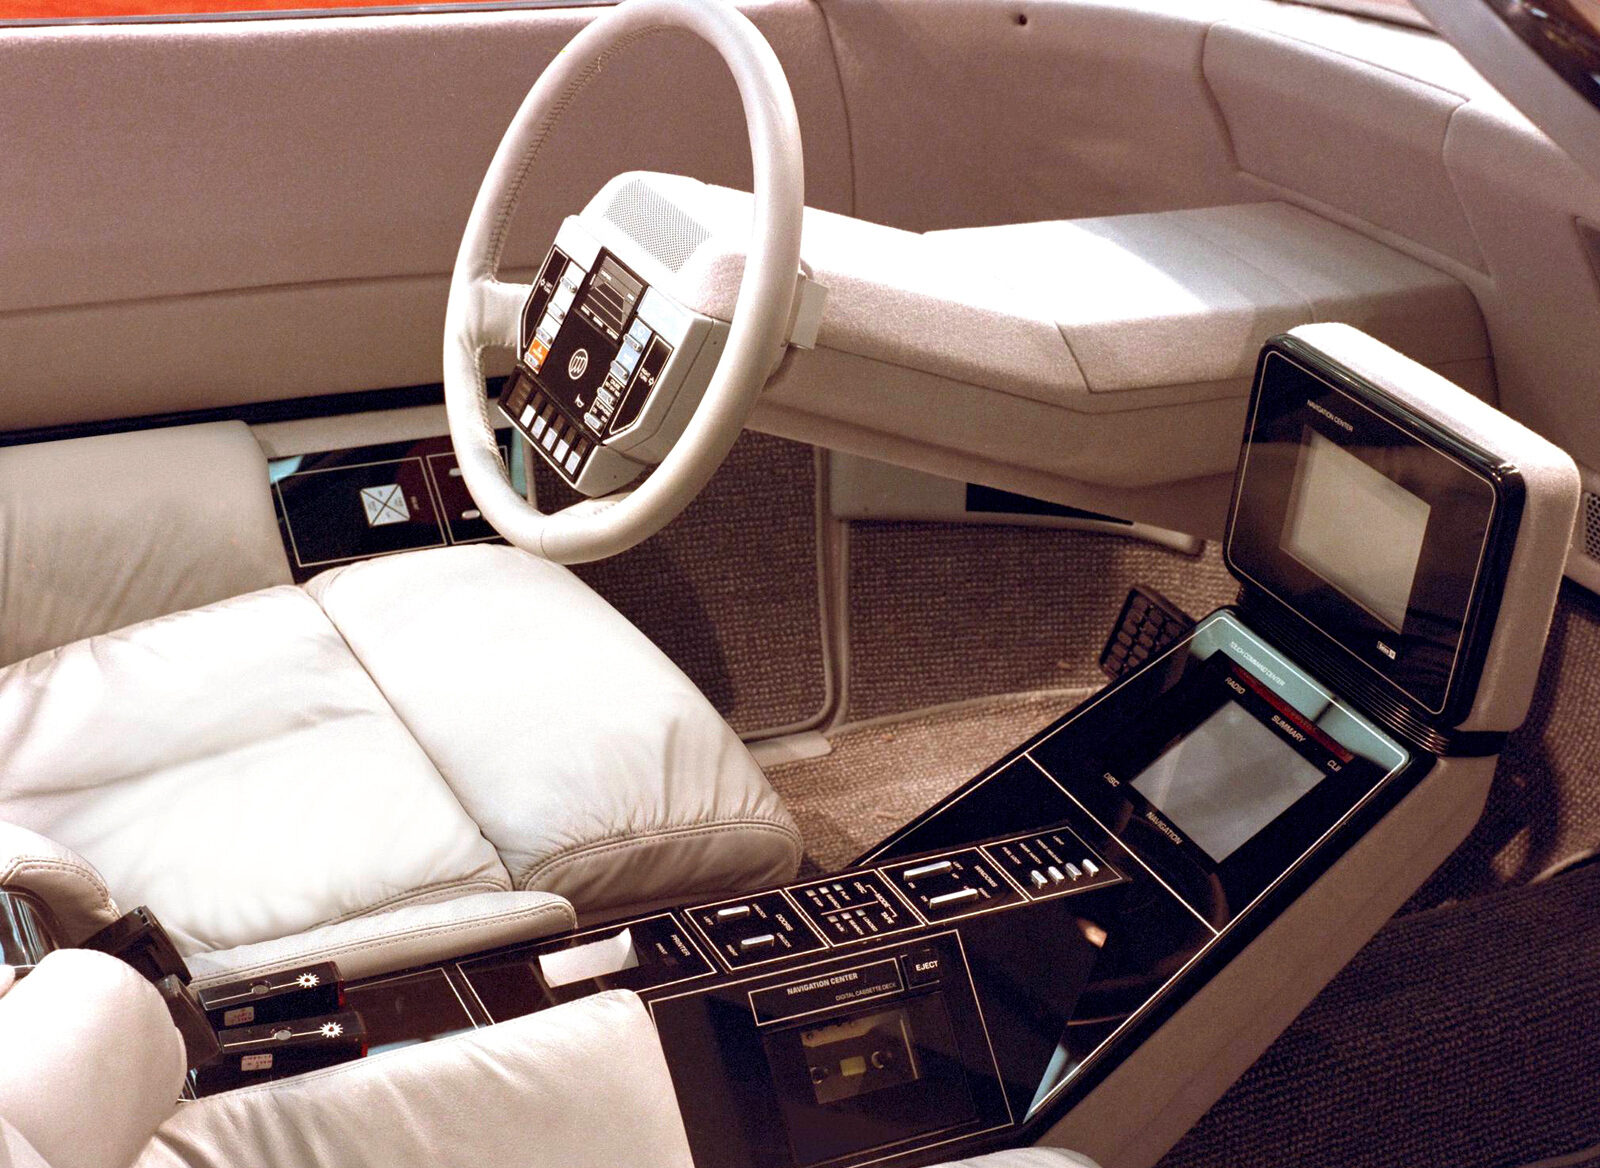 1983 Buick Questor Concept, buick, Buick Questor